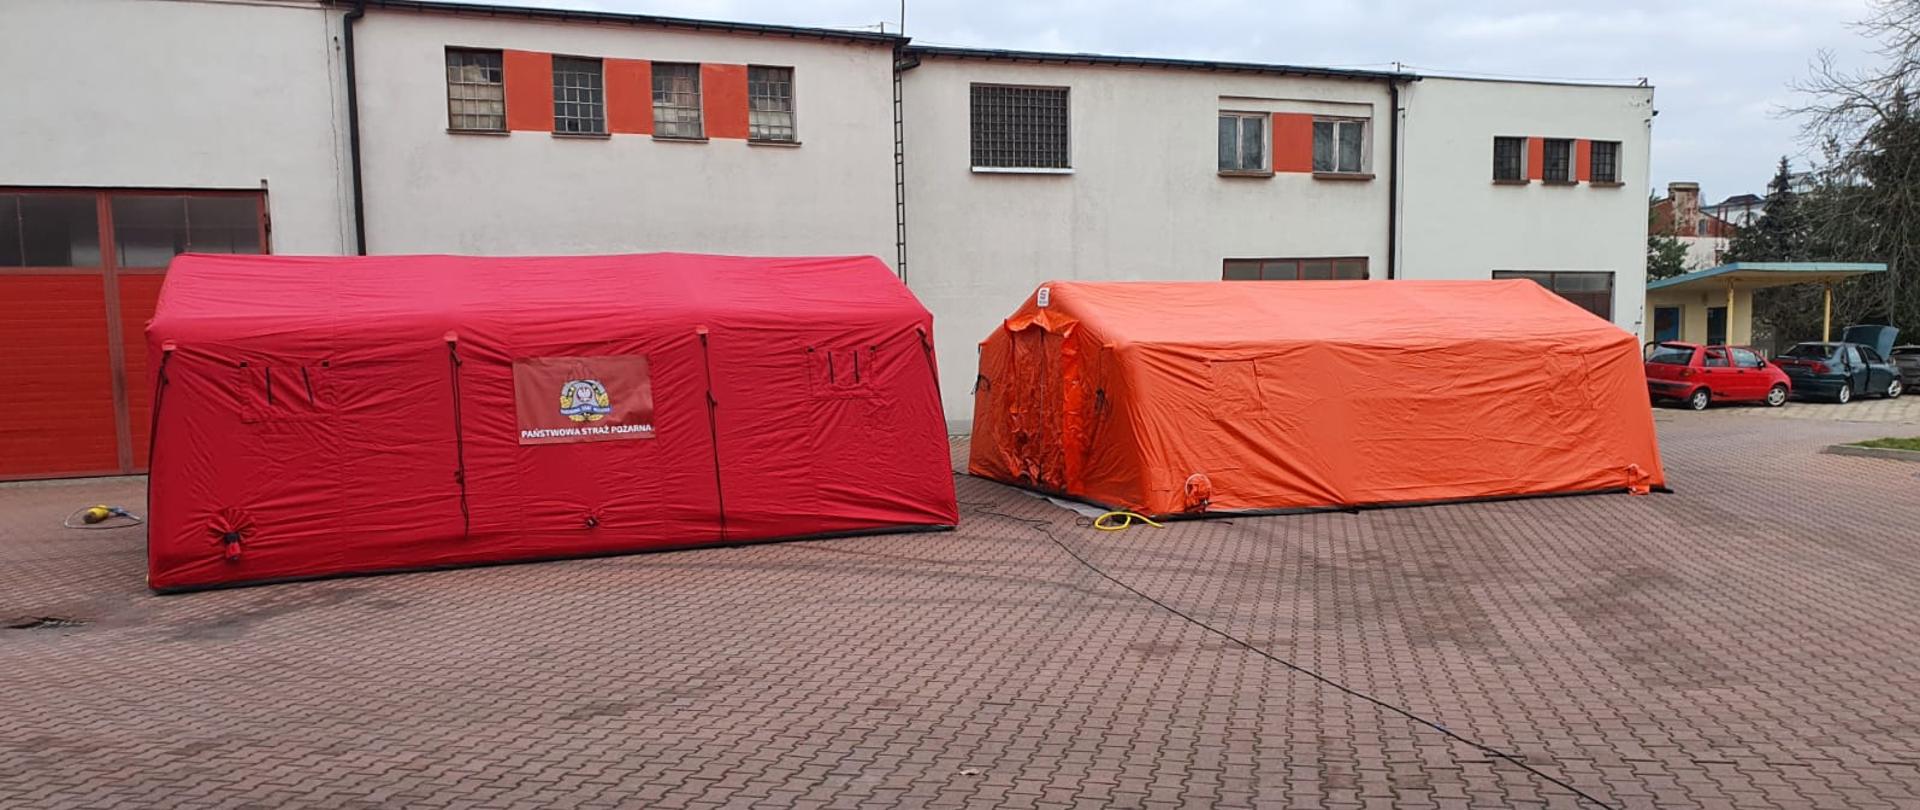 Na zdjęciu widzimy dwa rozłożone namioty ratownicze. Z lewej strony kadru widzimy namiot koloru czerwonego z naniesionym logo Państwowej Straży Pożarnej.
Z prawej strony kadru widzimy namiot koloru pomarańczowego. Namioty rozłożone są na placu manewrowym który jest utwardzony kostką brukową koloru czerwonego. W tle widzimy budynki gospodarcze koloru kremowego. Z prawej strony kadru w tle widzimy dwa samochody koloru czerwonego i ciemno zielonego stojących pod wiatą. 